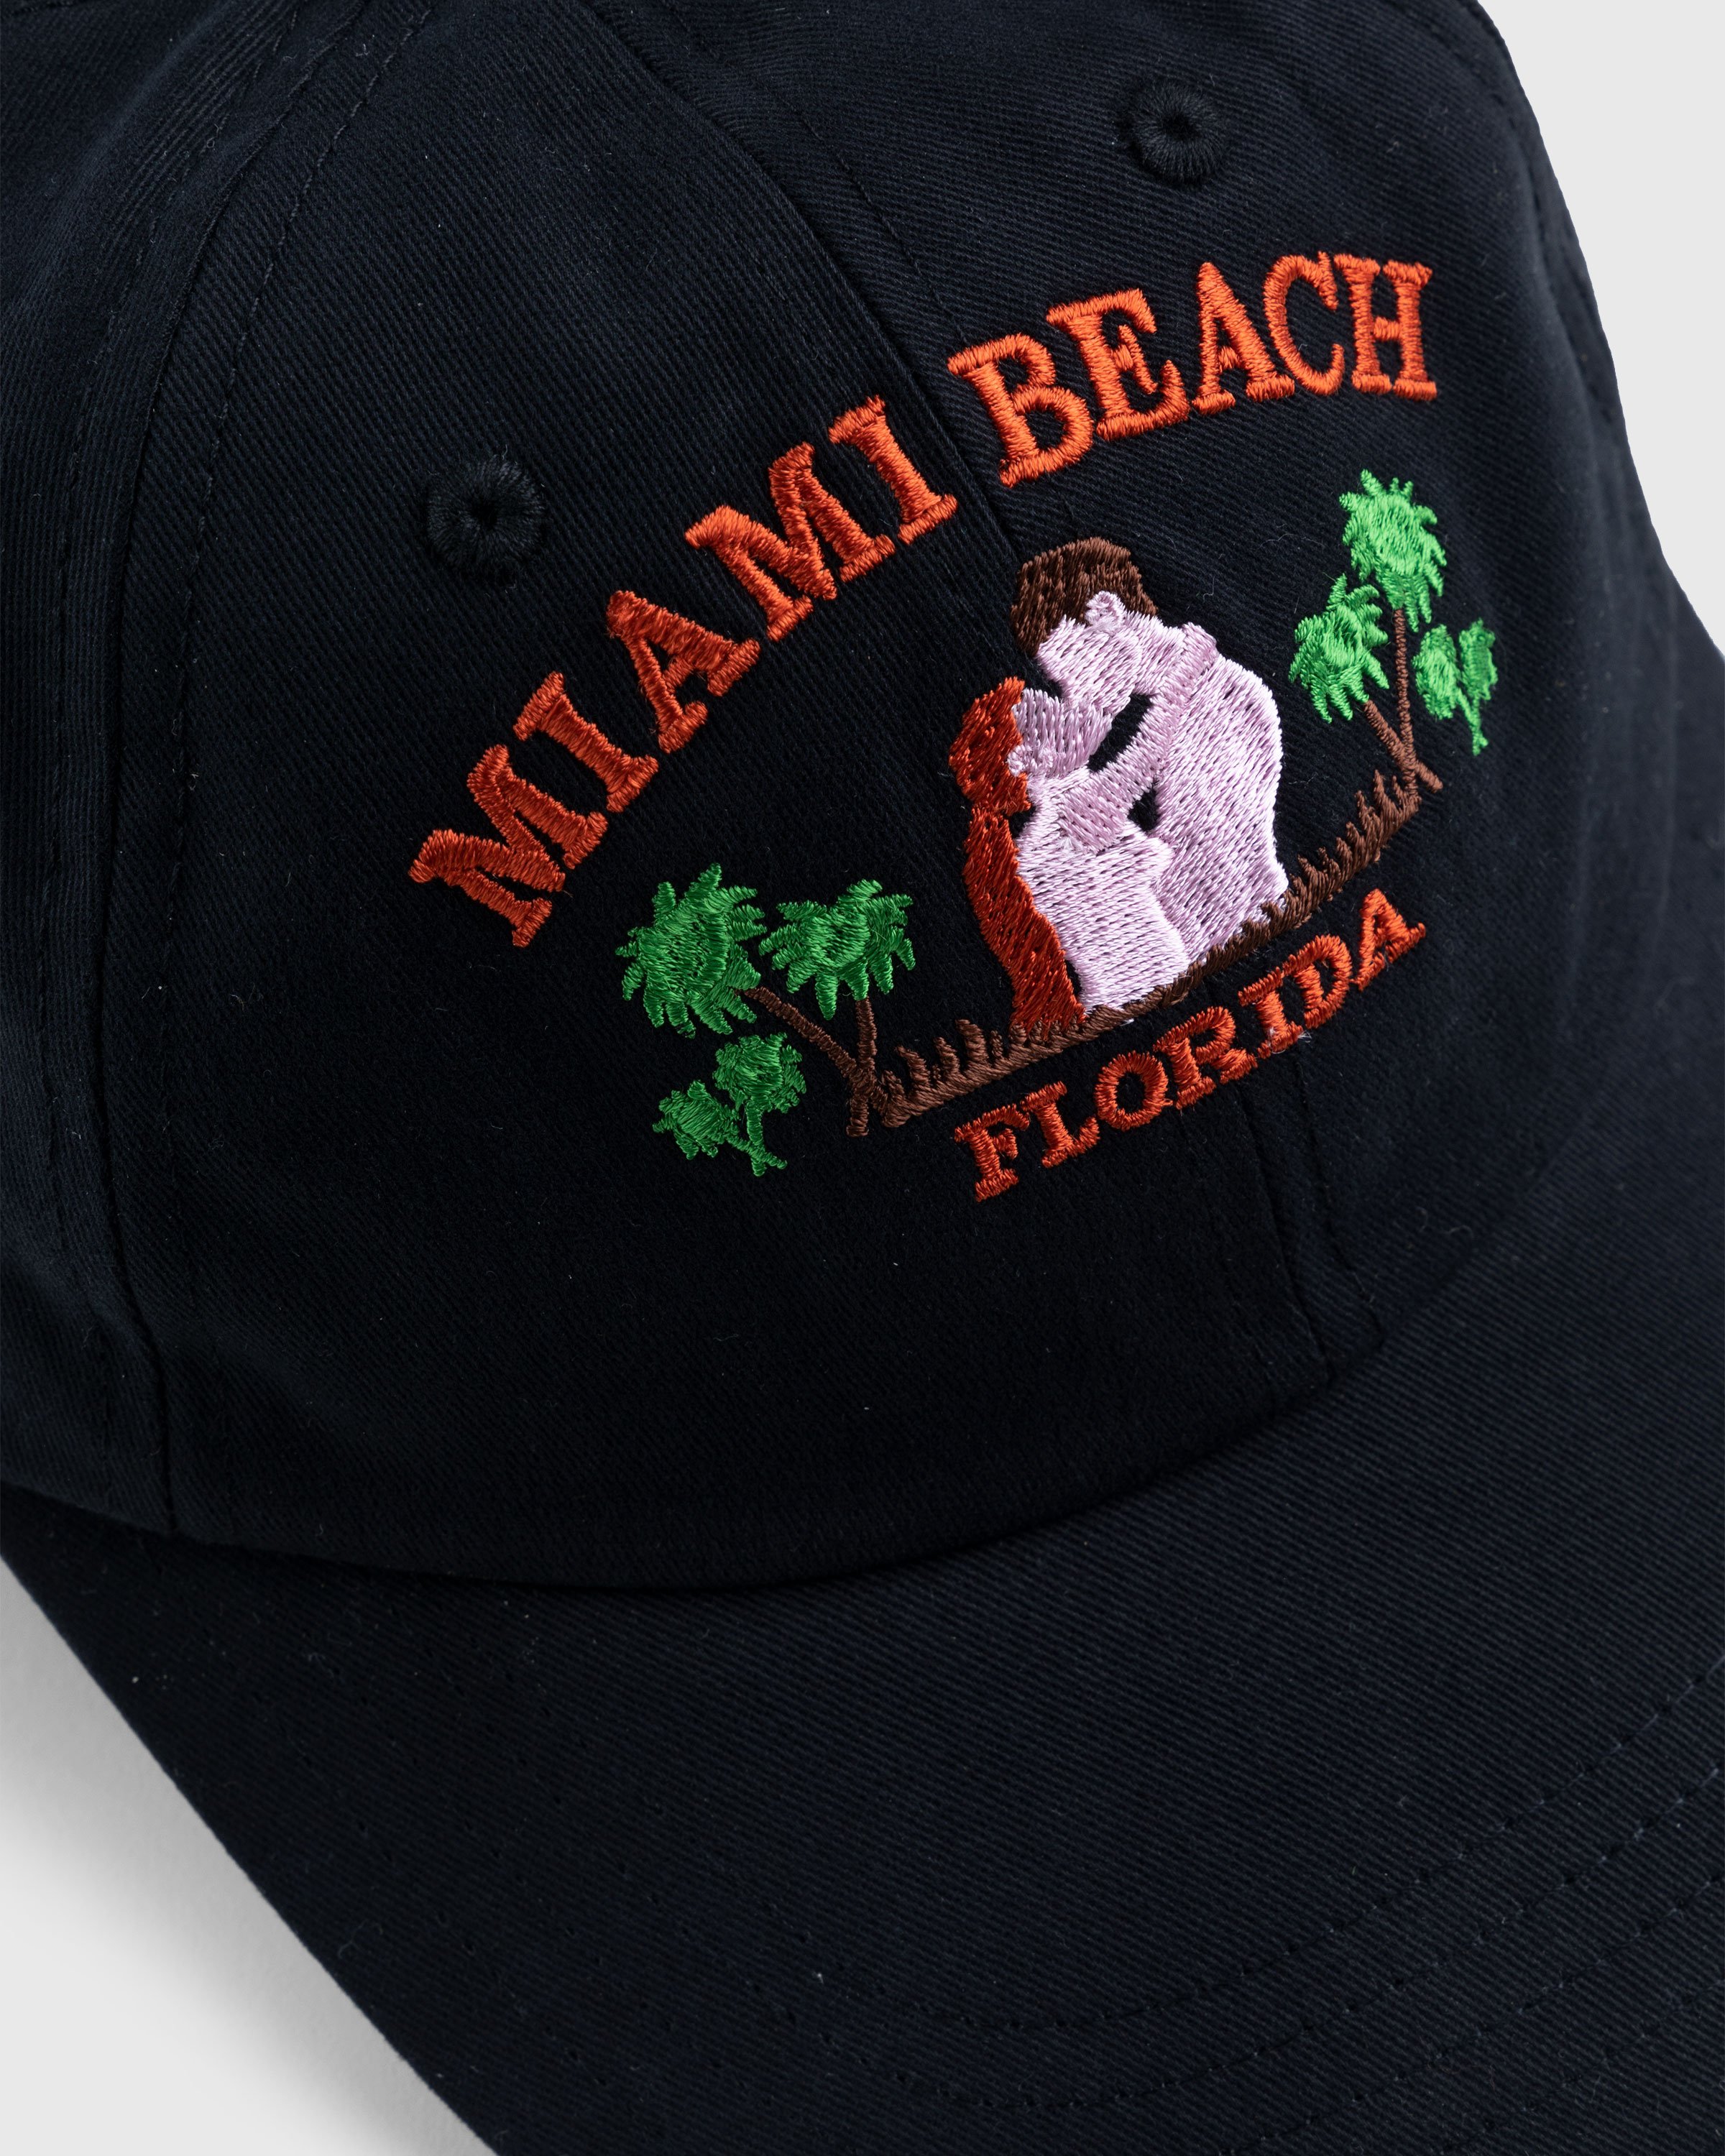 Carne Bollente - Kisses From Miami Black - Accessories - Black - Image 4